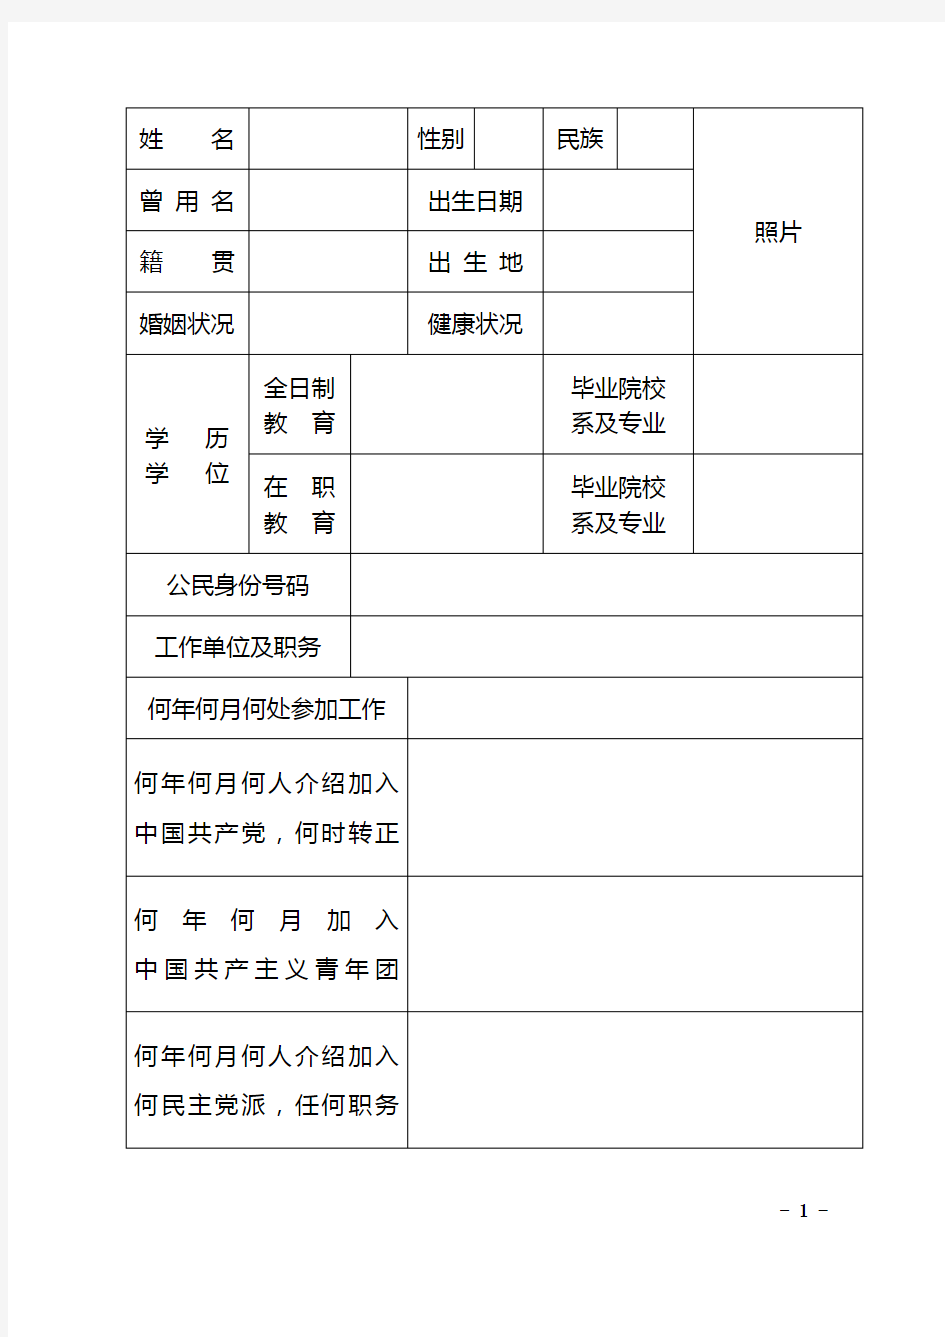 干部履历表(2015年版)中共中央组织部